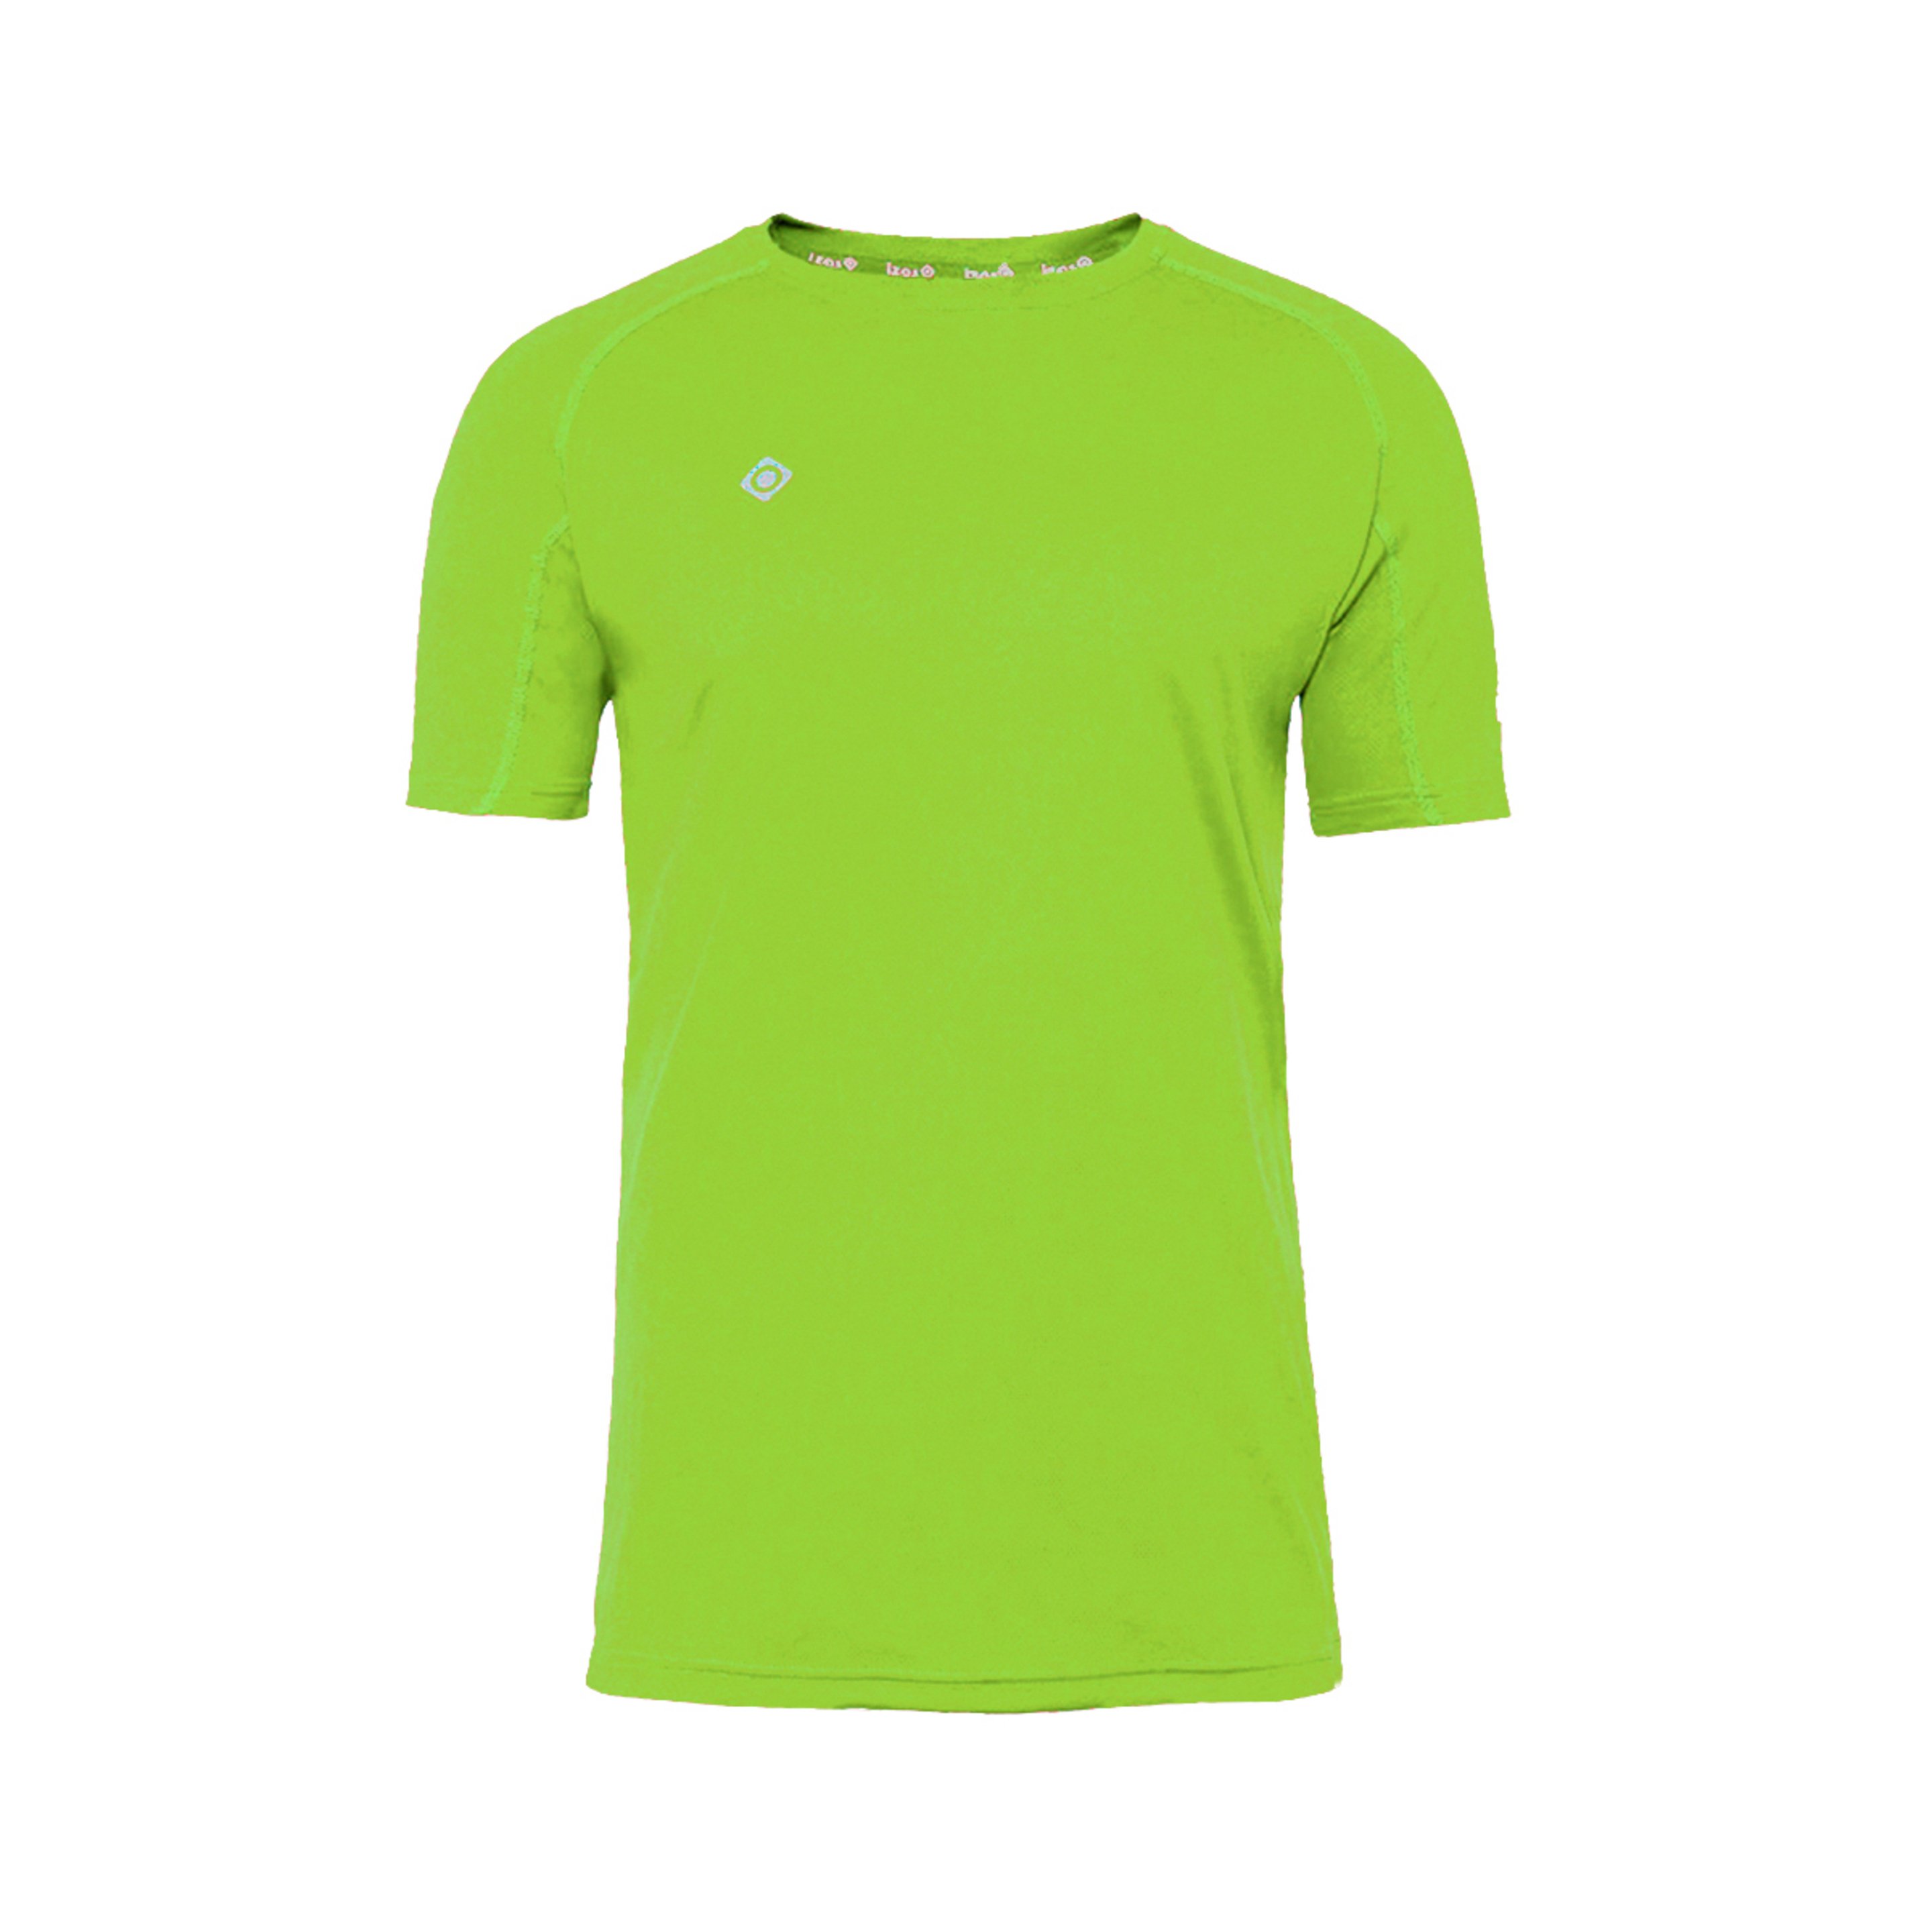 Izas Creus T-shirt Básica De Desporto - verde - 